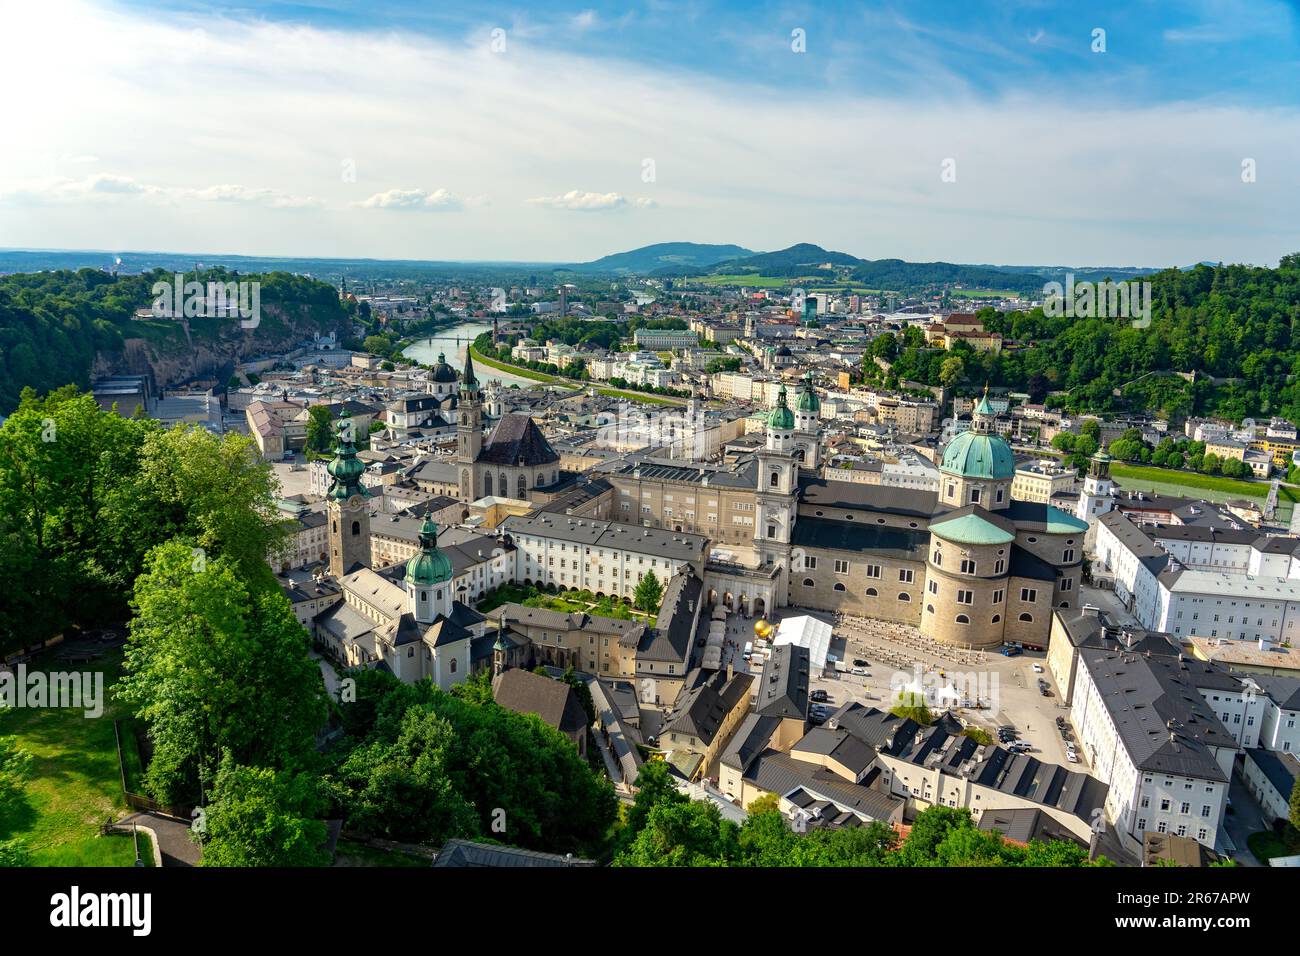 Vue depuis le château de Hochensalzburg avec une vue magnifique sur Salzbourg Autriche avec de nombreuses églises et tours . Banque D'Images